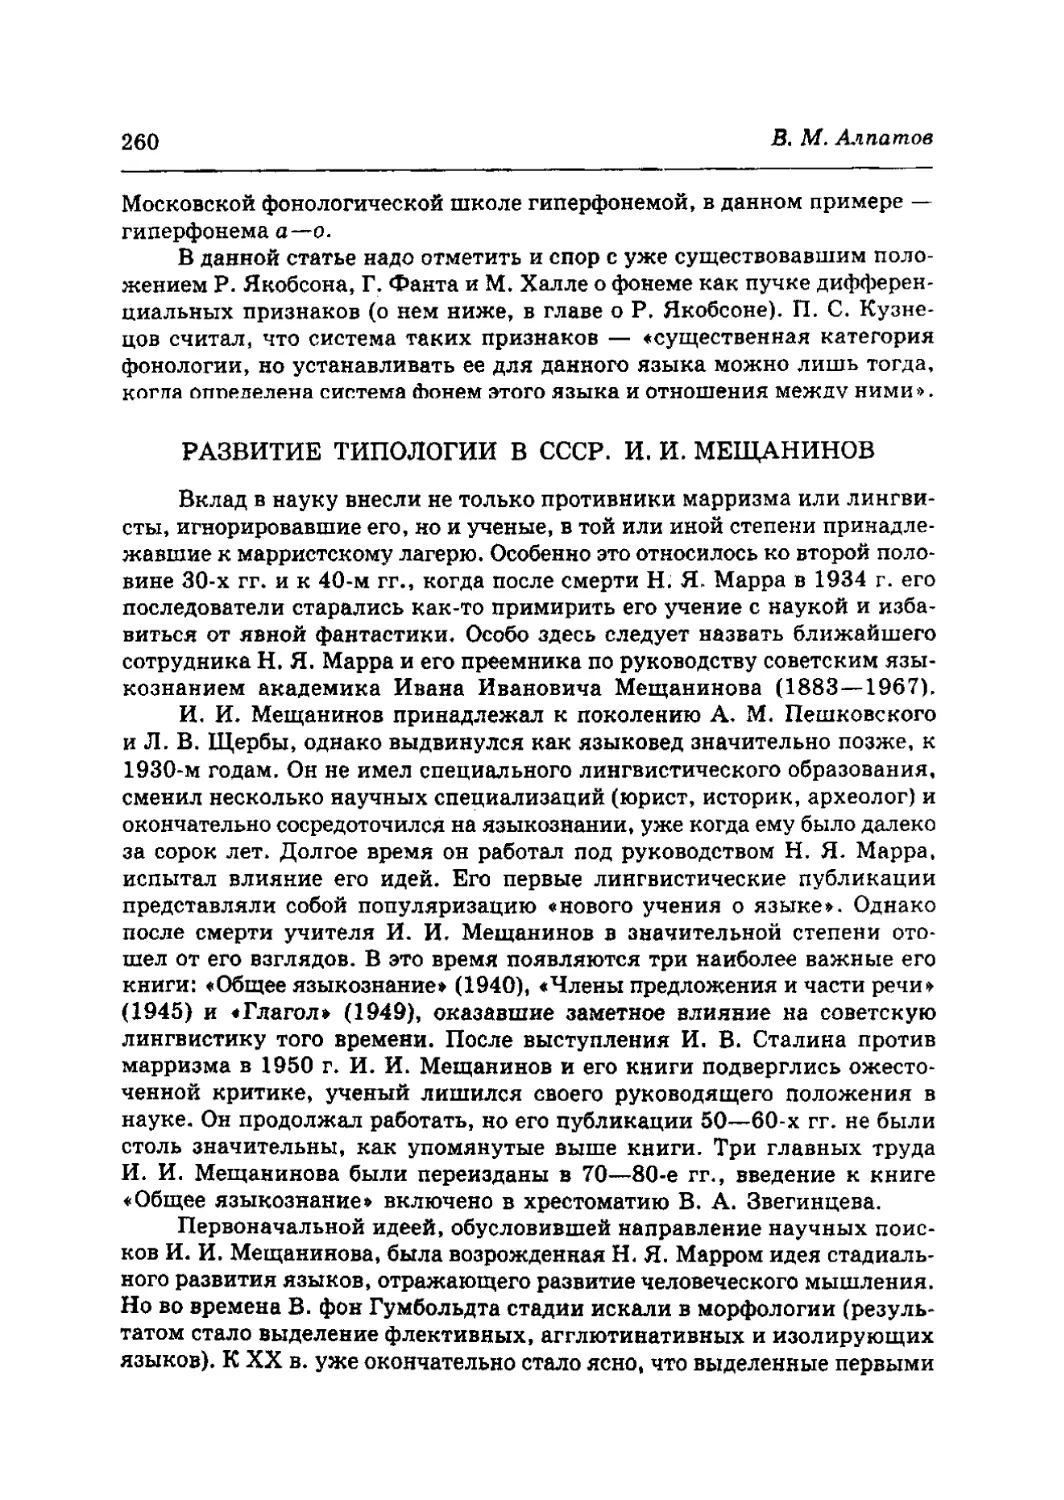 Развитие типологии в СССР. И. И. Мещанинов